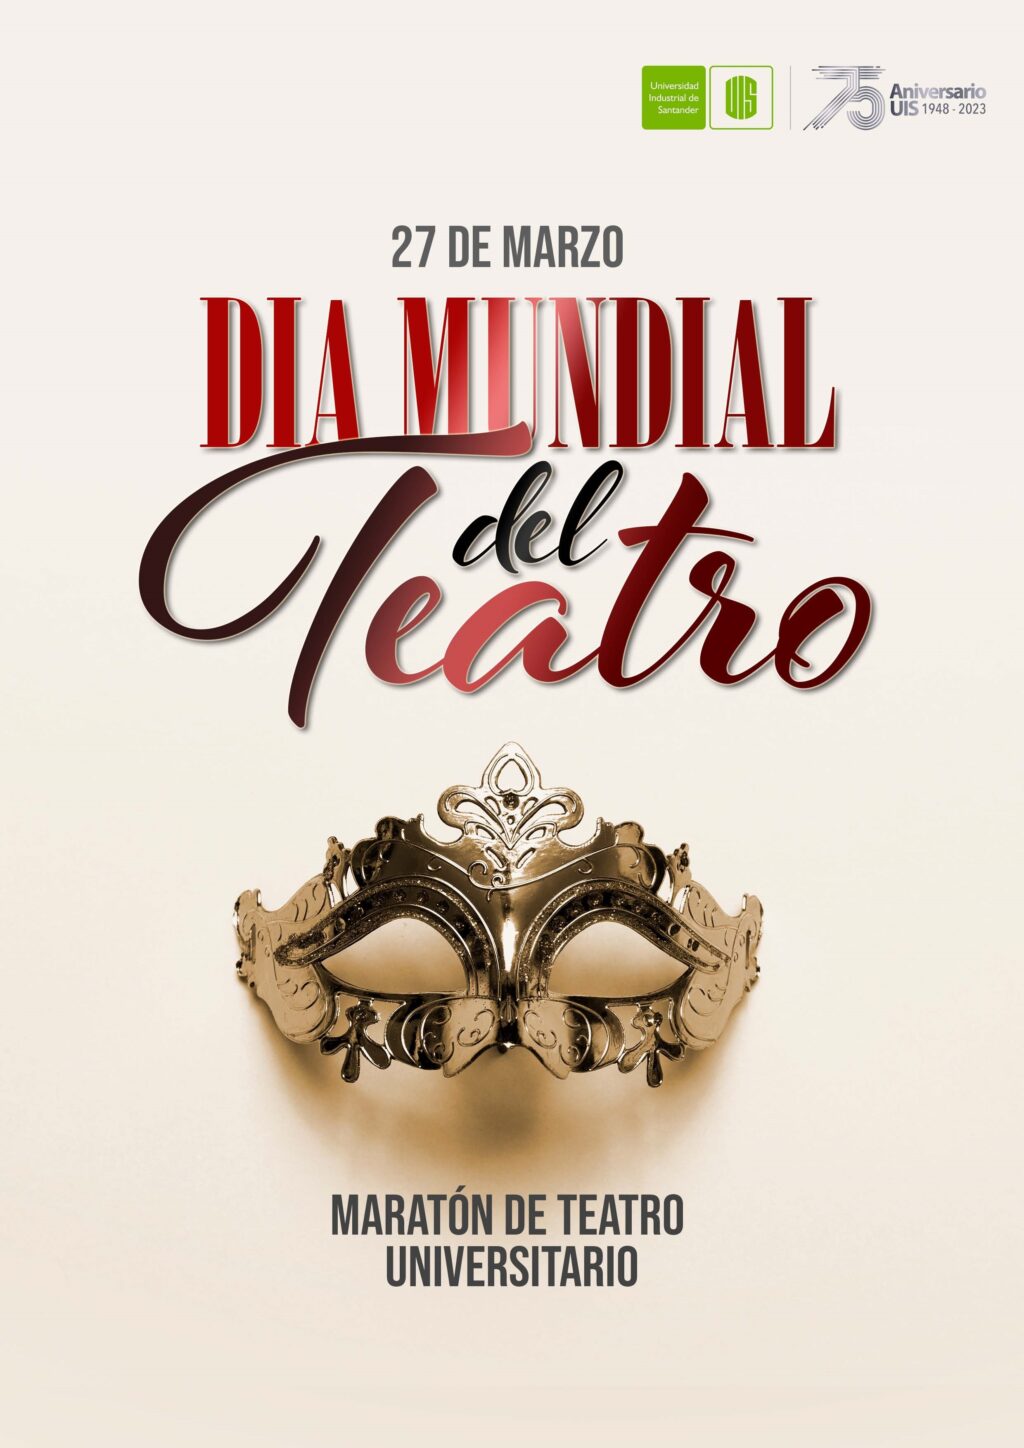 Imagen oficial de la conmemoración del Día del Teatro.